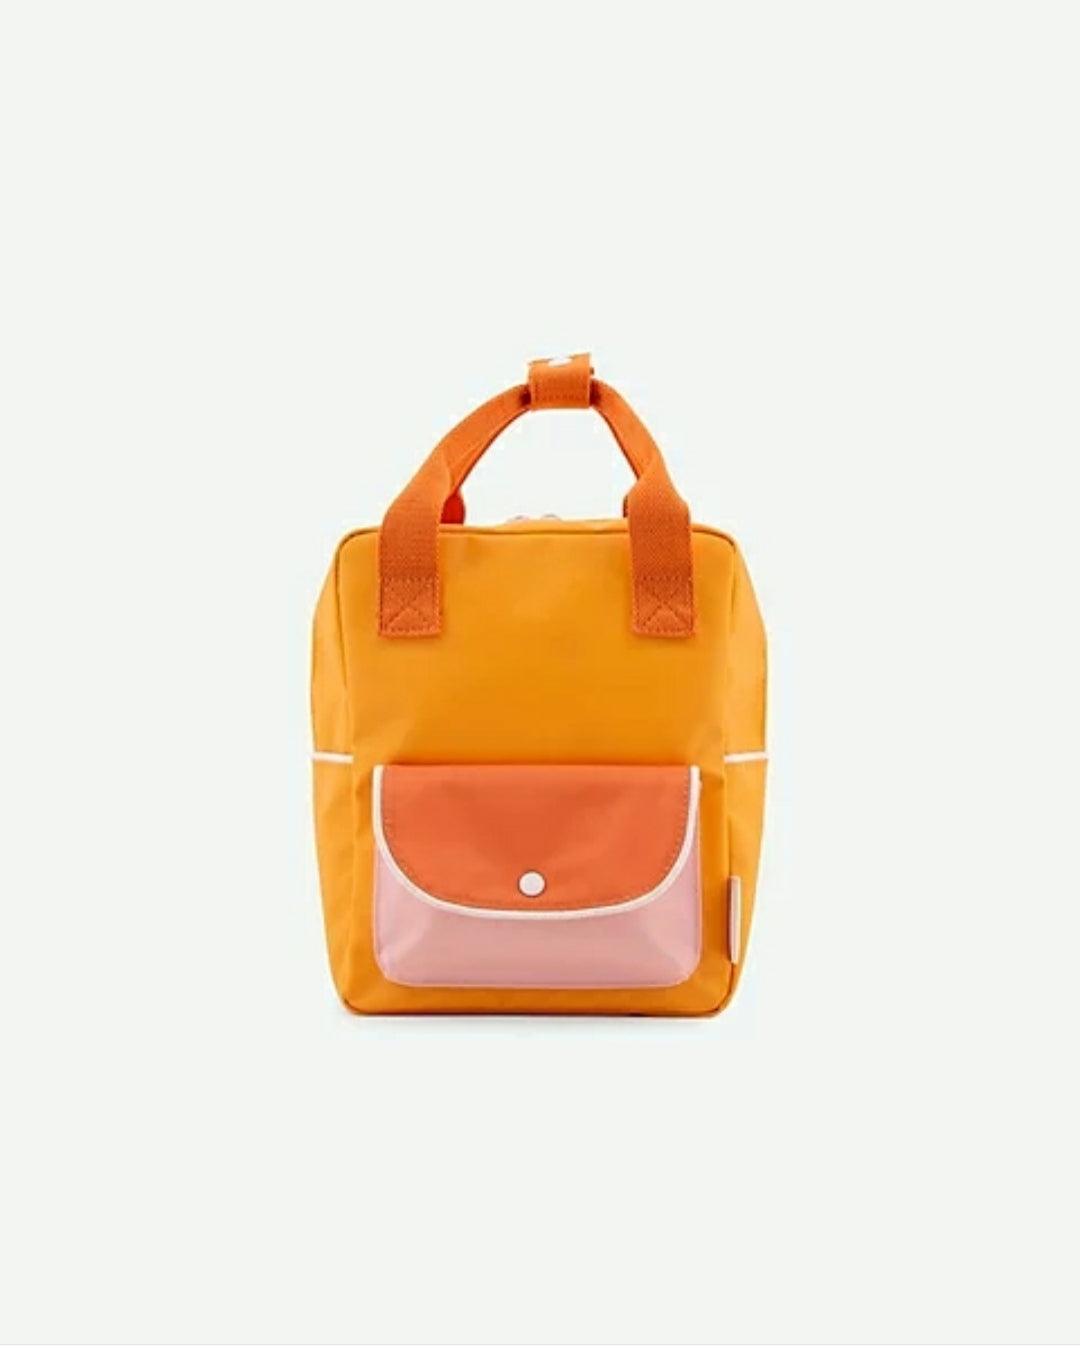 Small Backpack - Zaino Piccolo Giallo scuro+Arancio+Rosa Confetto - Nani&S di Enza Tramontana